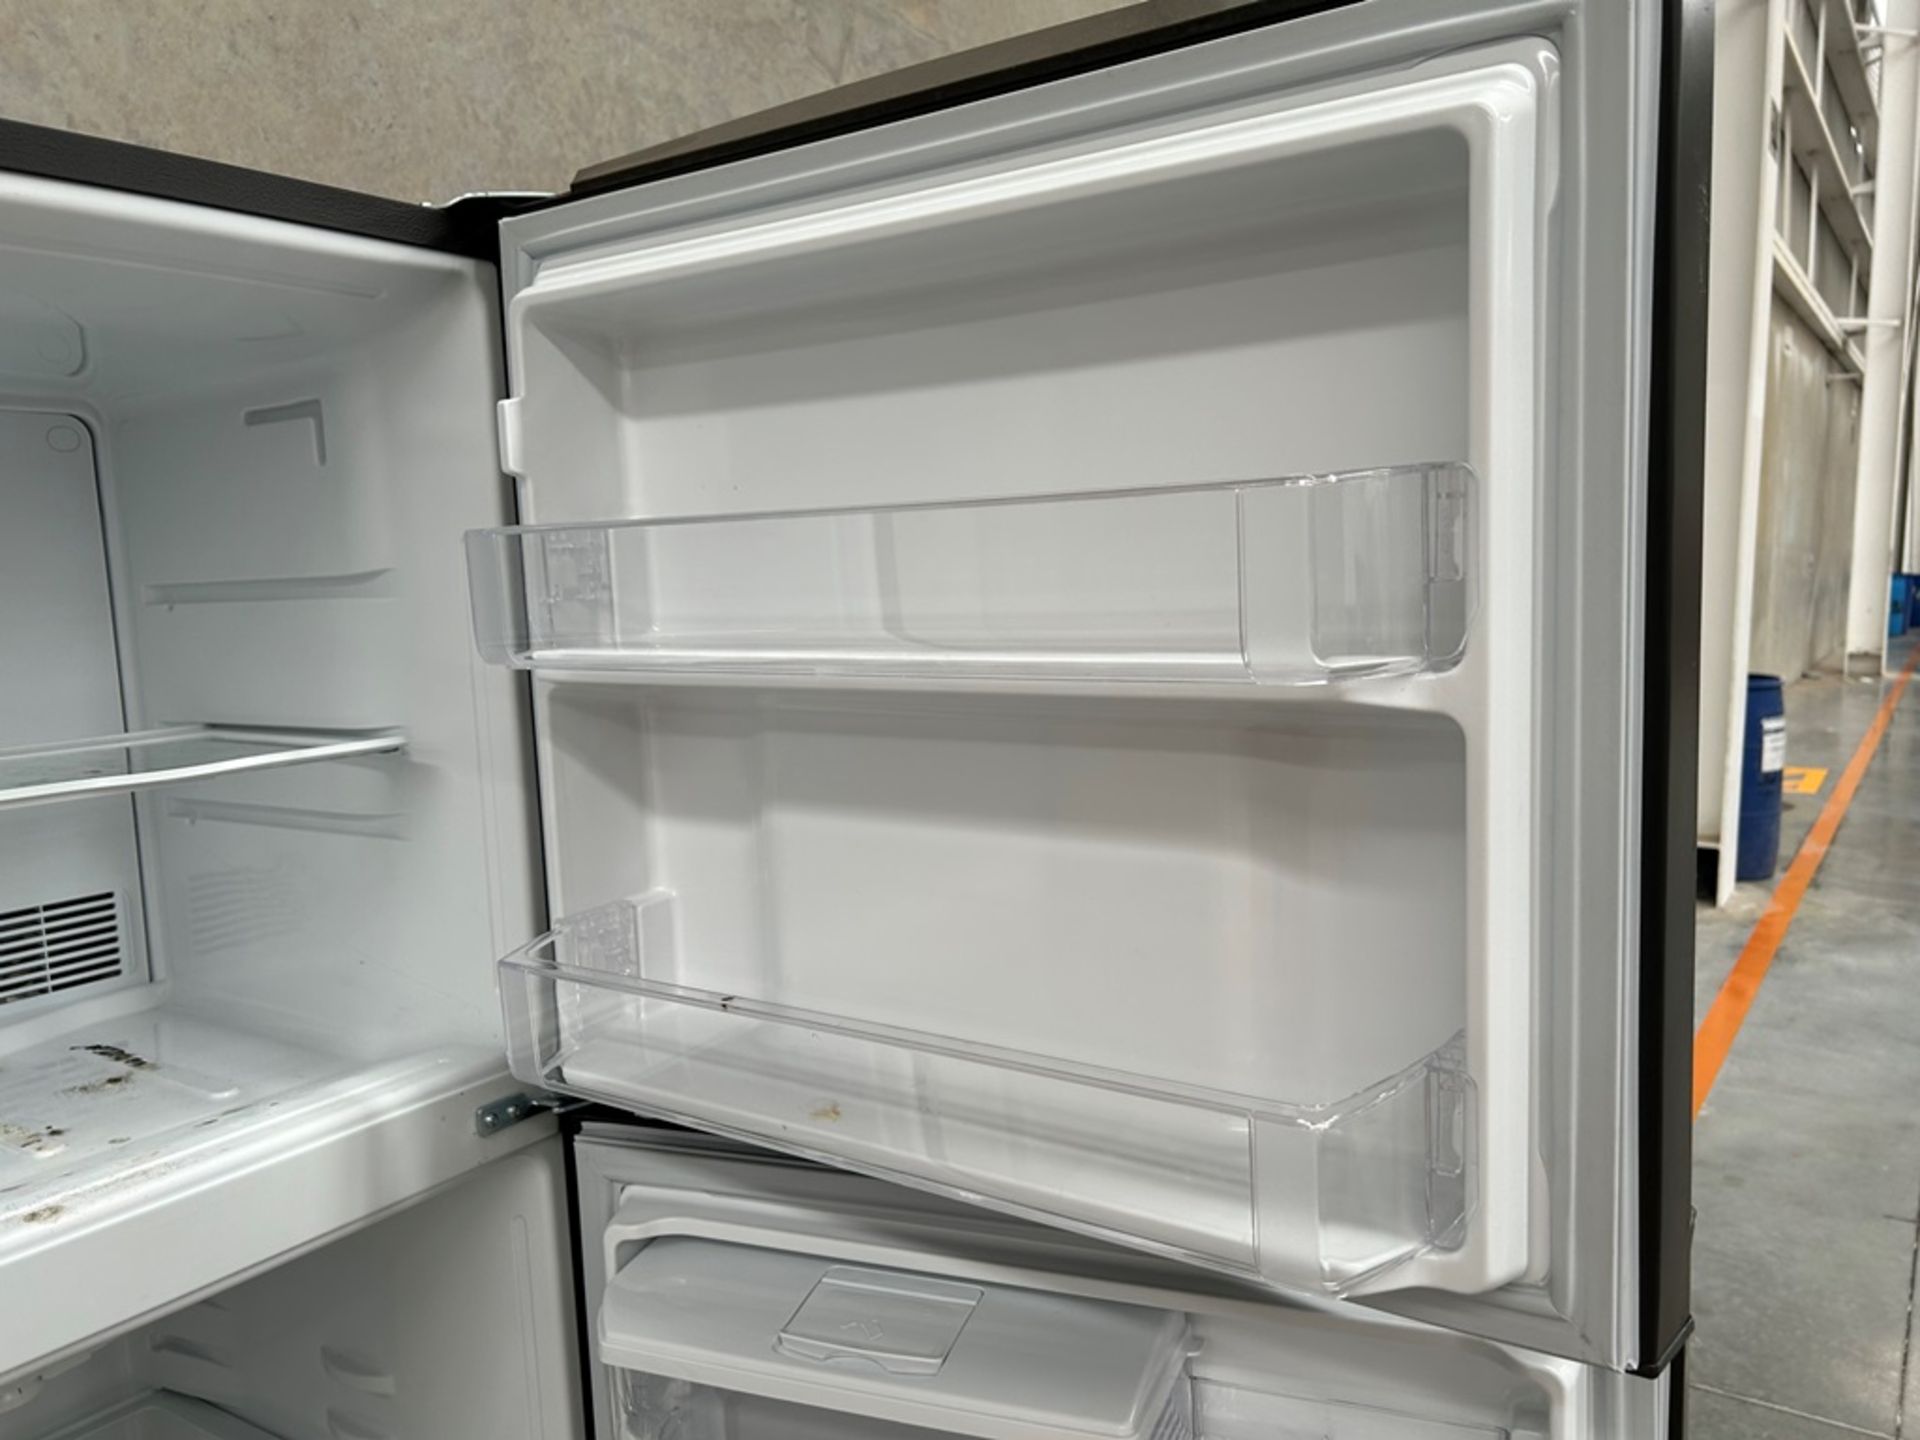 Lote de 2 refrigeradores contiene: 1 Refrigerador con dispensador de agua Marca MABE, Modelo RME360 - Image 8 of 18